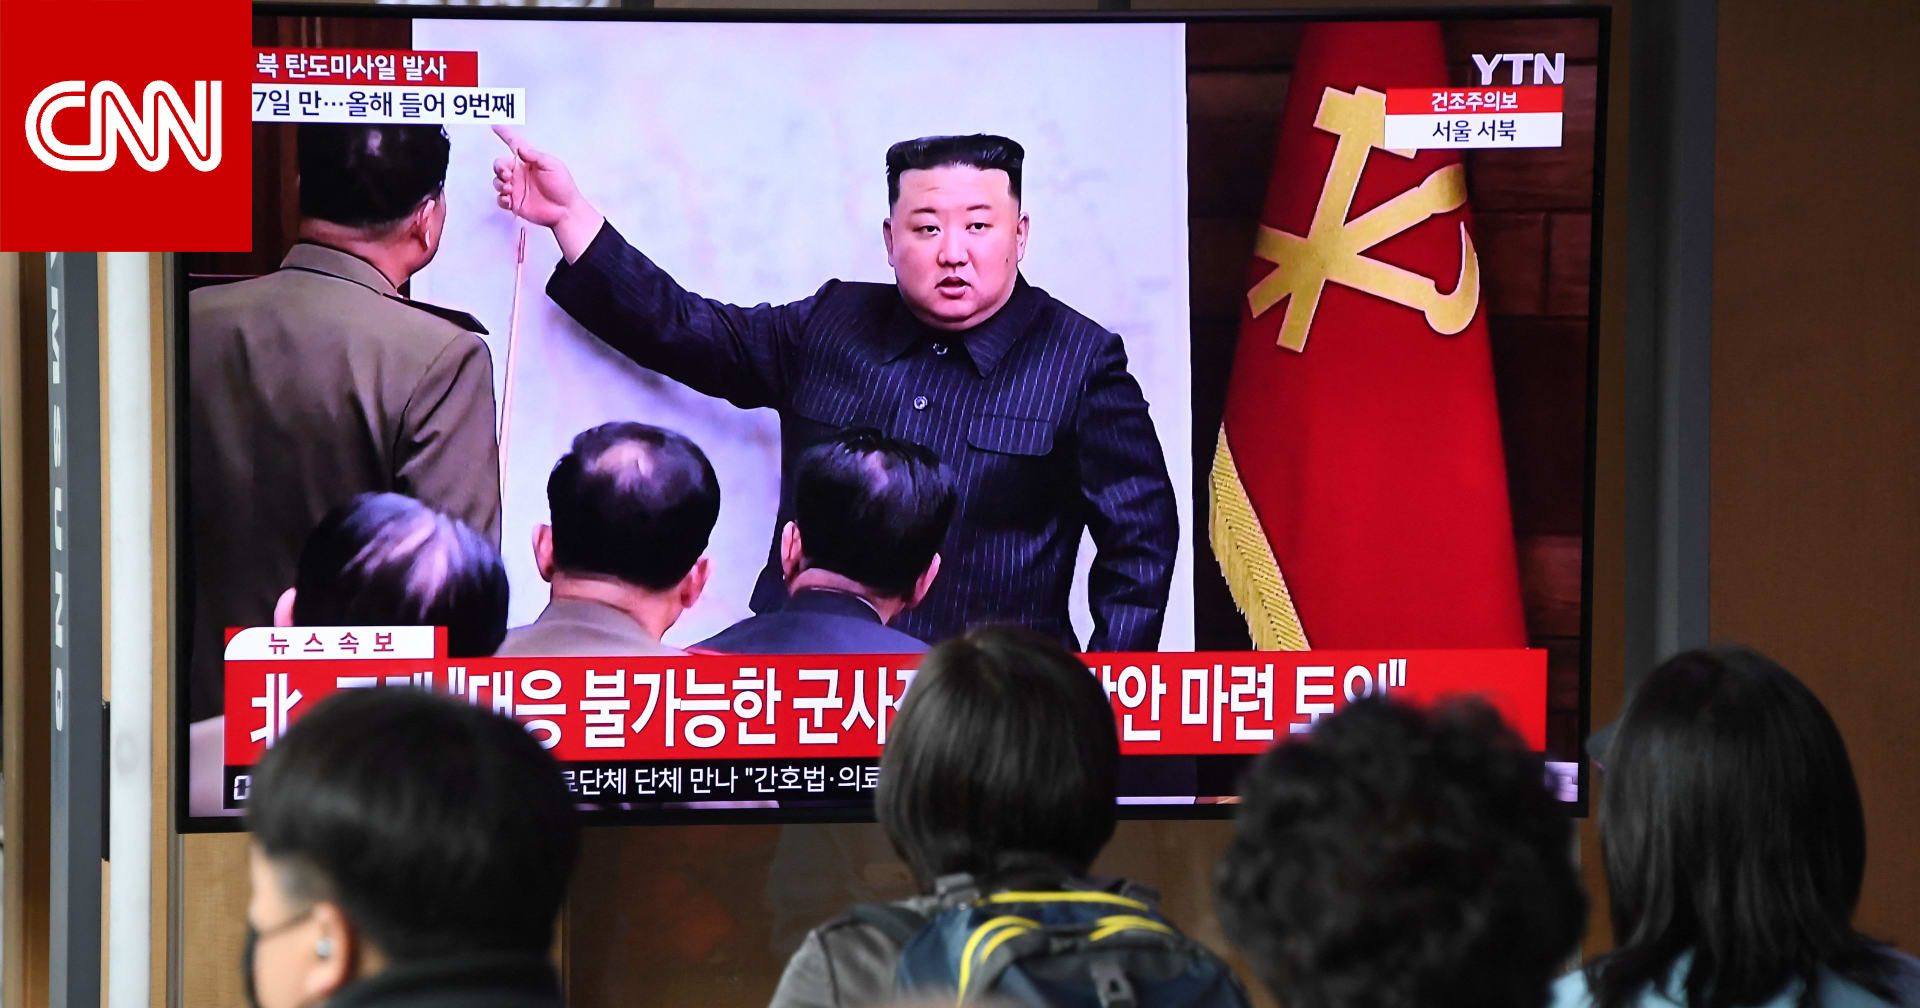 زعيم كوريا الشمالية: لن نتردد في استخدام السلاح النووي إذا استفزنا العدو بأسلحة نووية